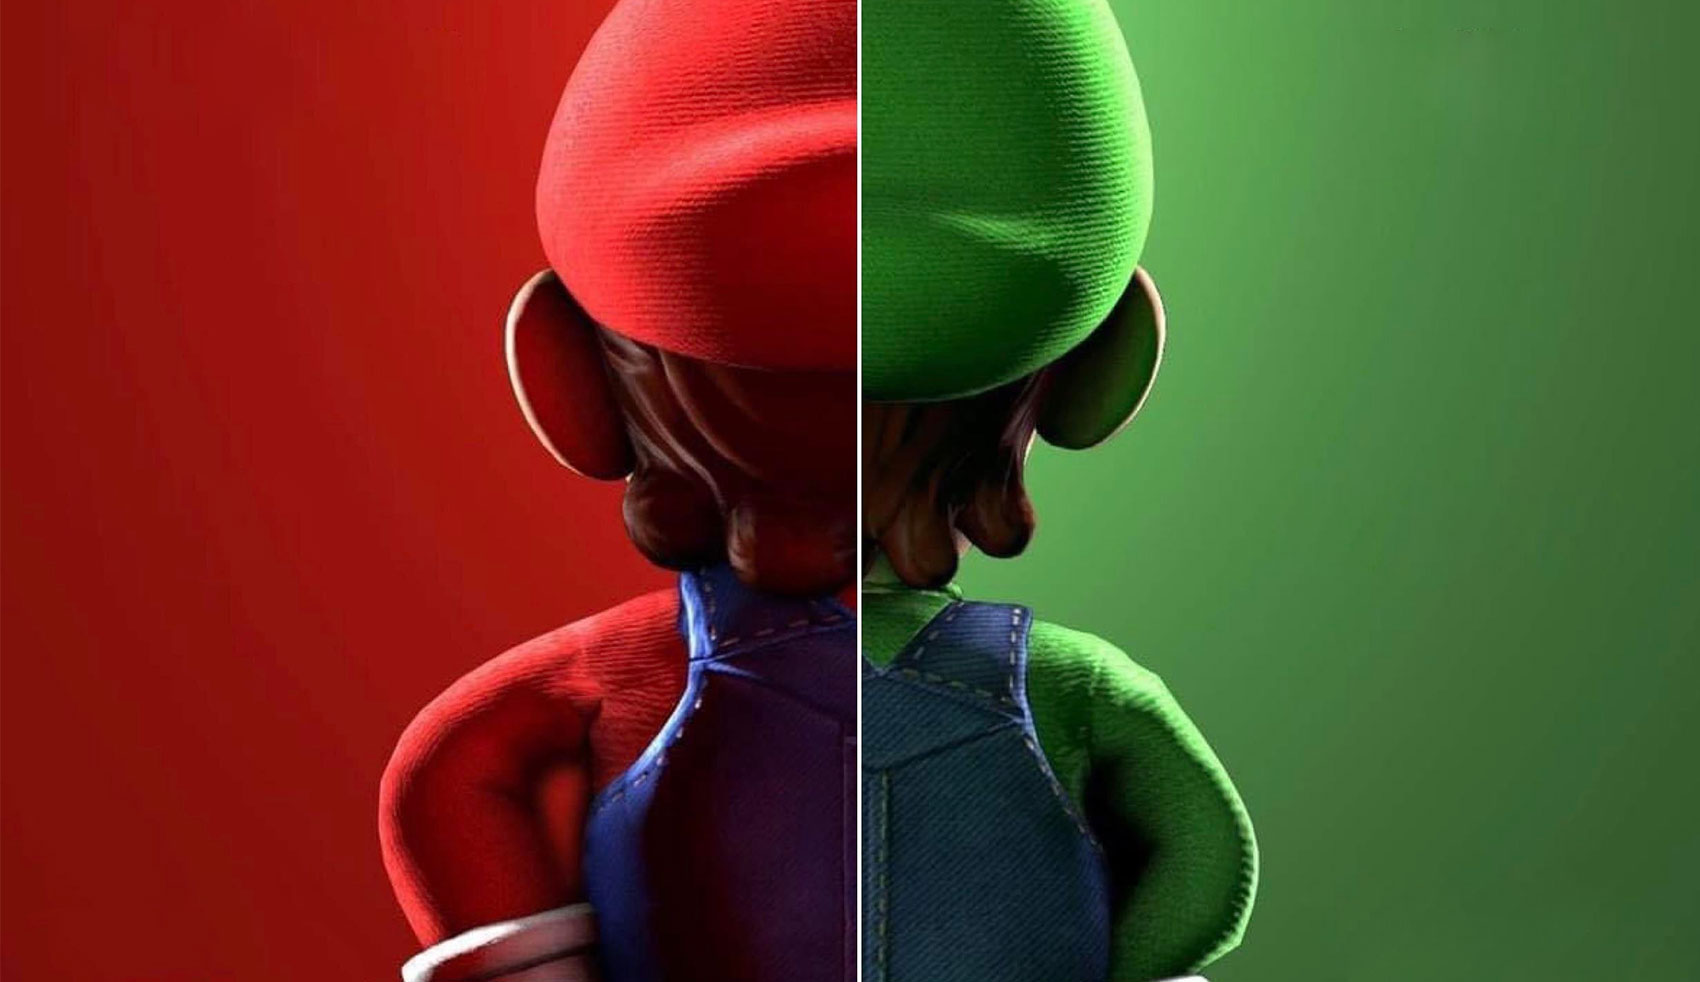 uper Mario Bros imagem de divulgação